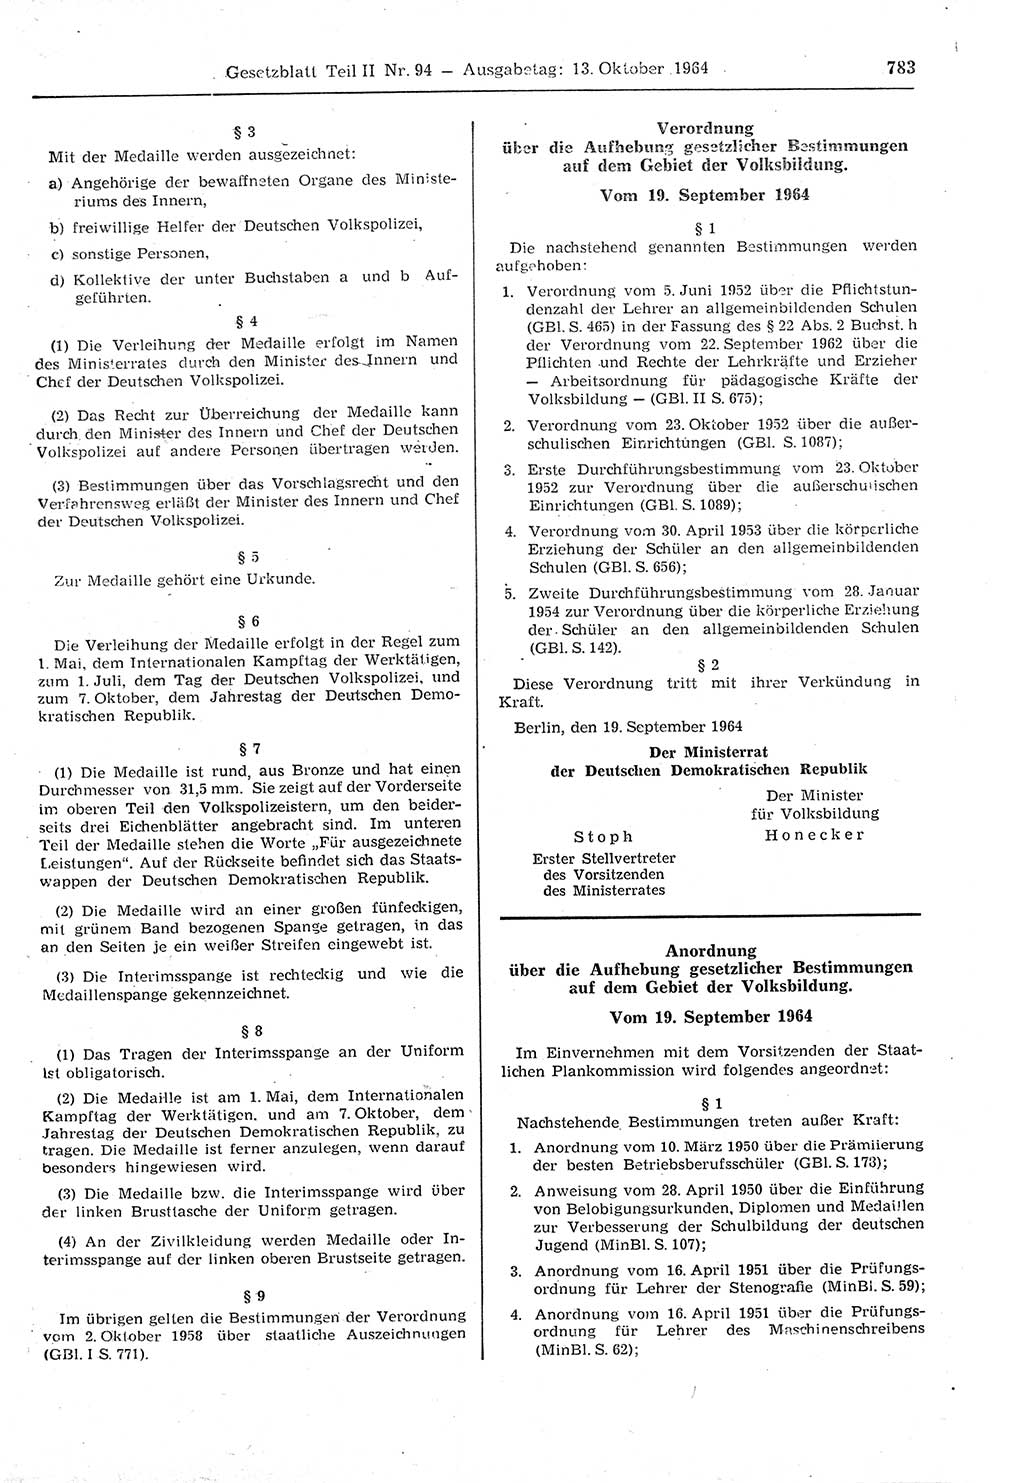 Gesetzblatt (GBl.) der Deutschen Demokratischen Republik (DDR) Teil ⅠⅠ 1964, Seite 783 (GBl. DDR ⅠⅠ 1964, S. 783)